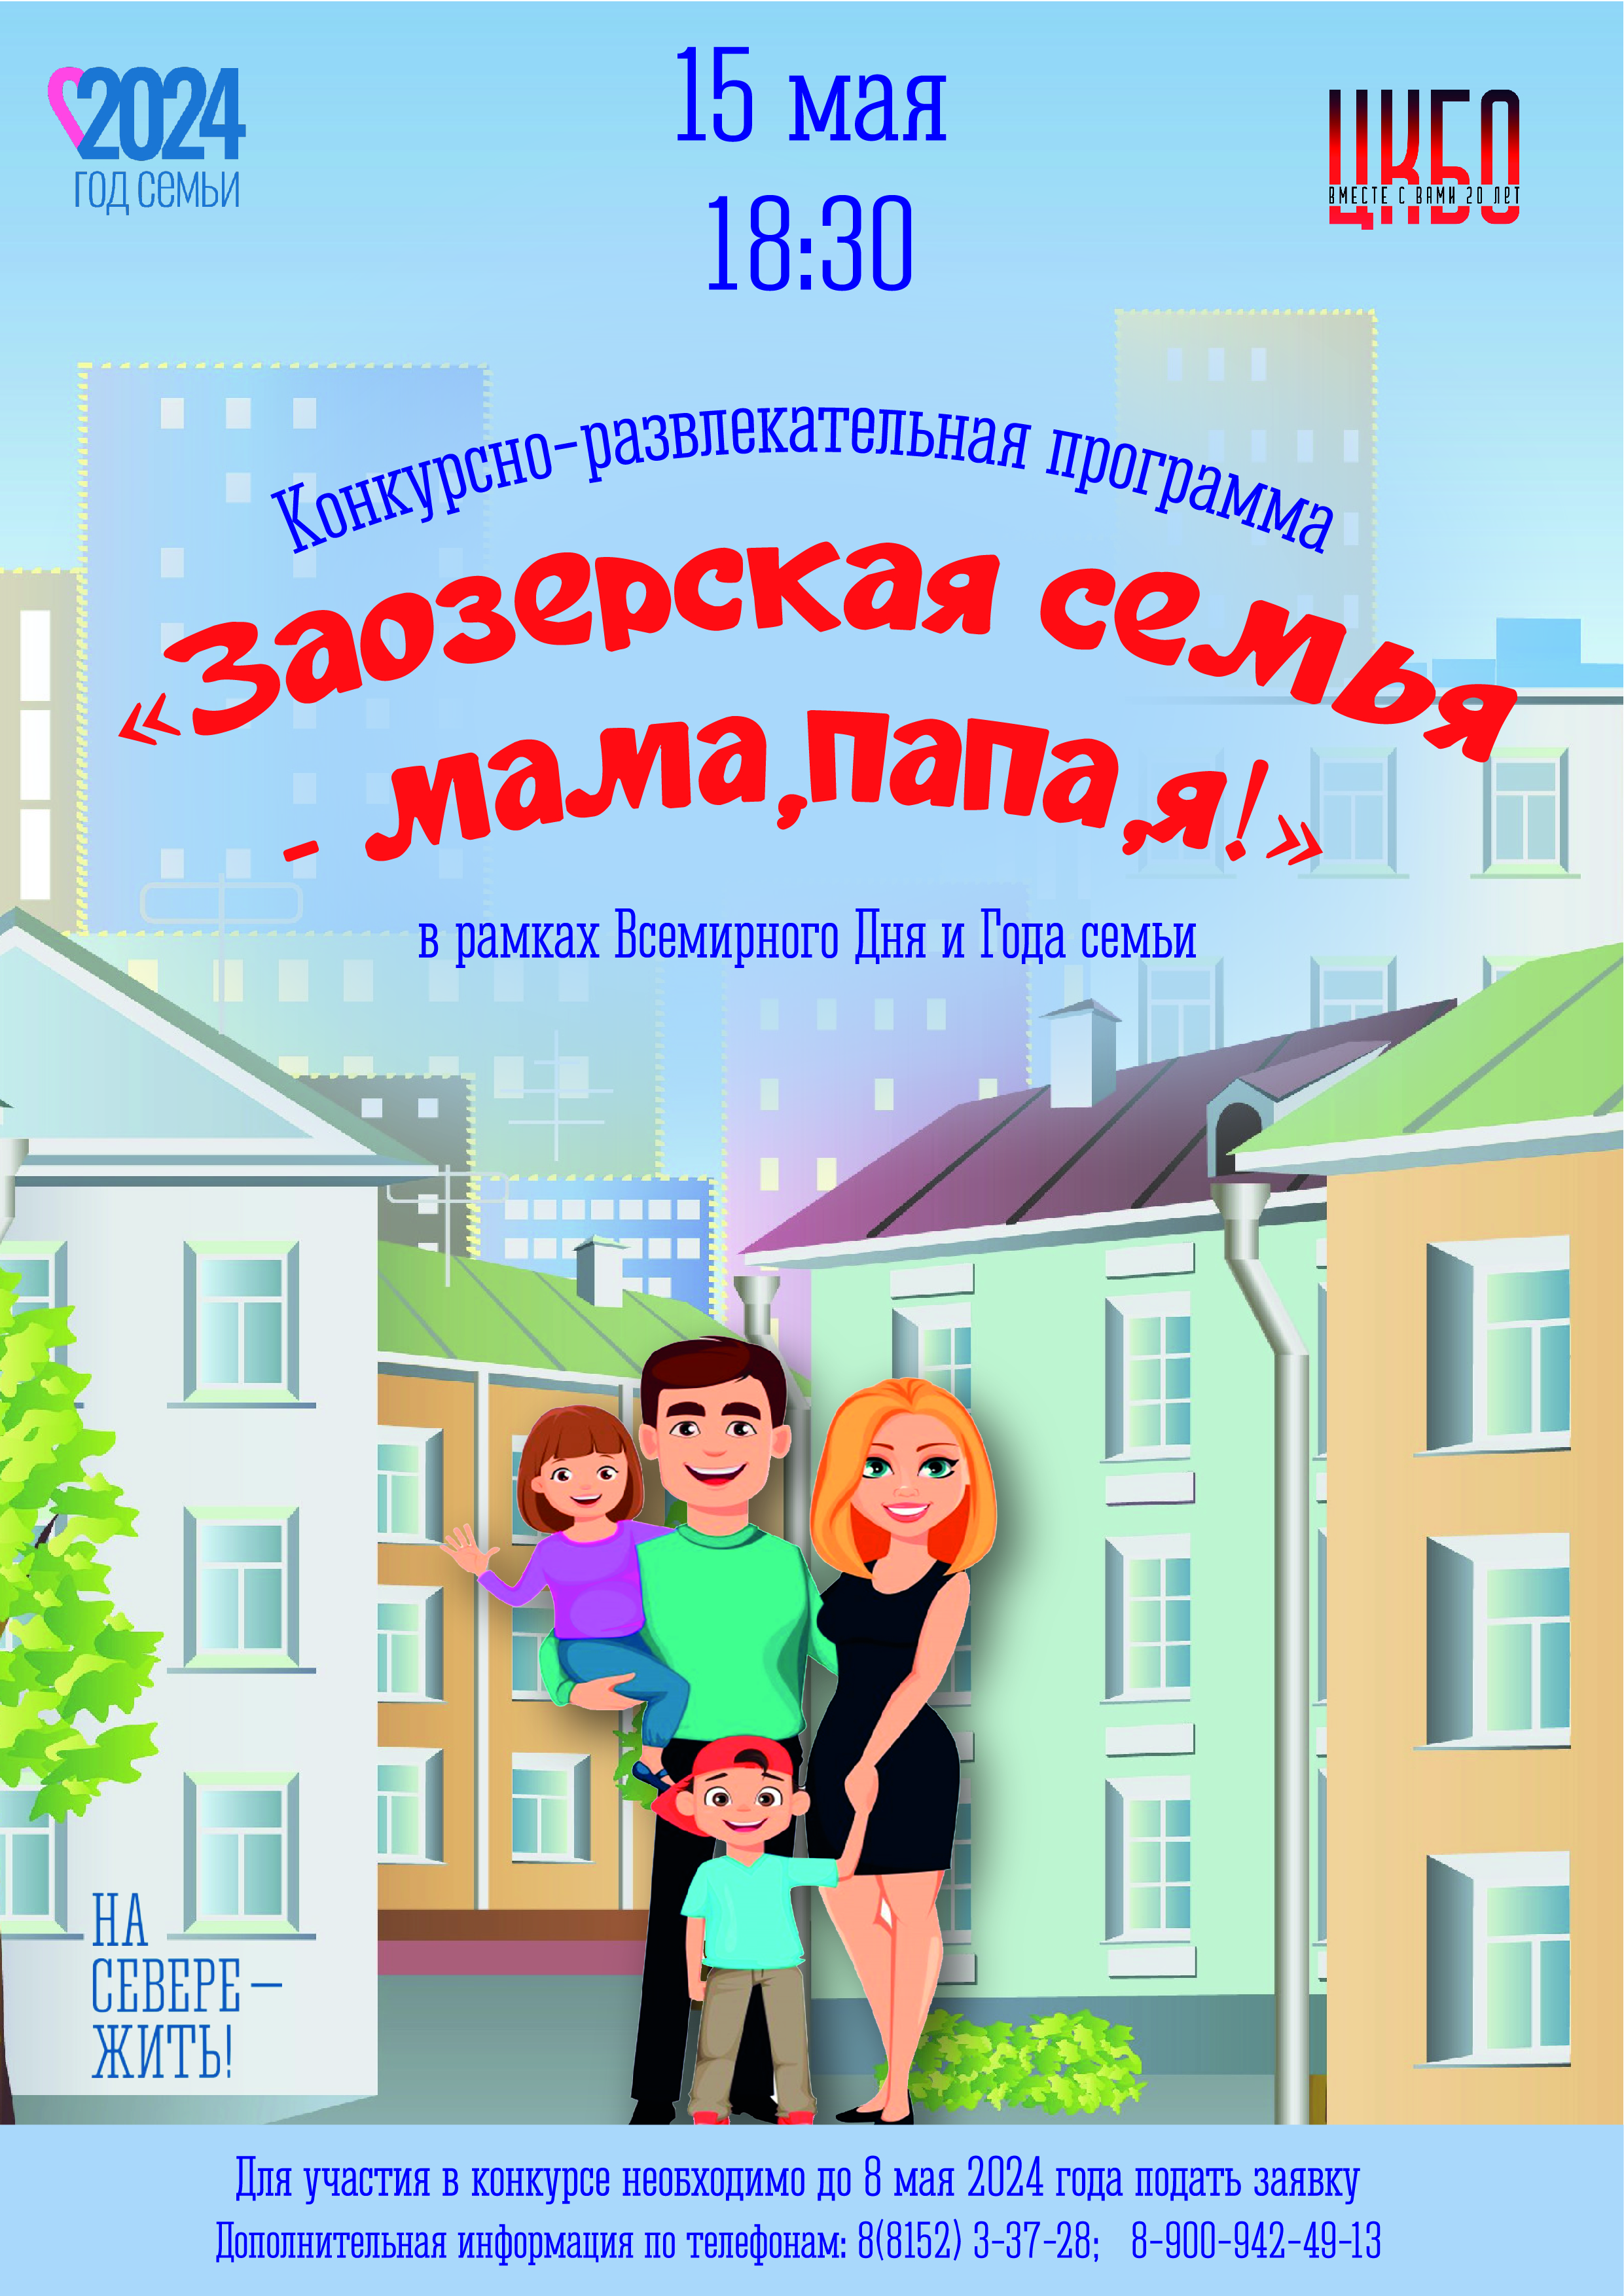 Конкурсно-развлекательная программа «Заозерская семья мама, папа, я!», в рамках Всемирного Дня и Года семьи